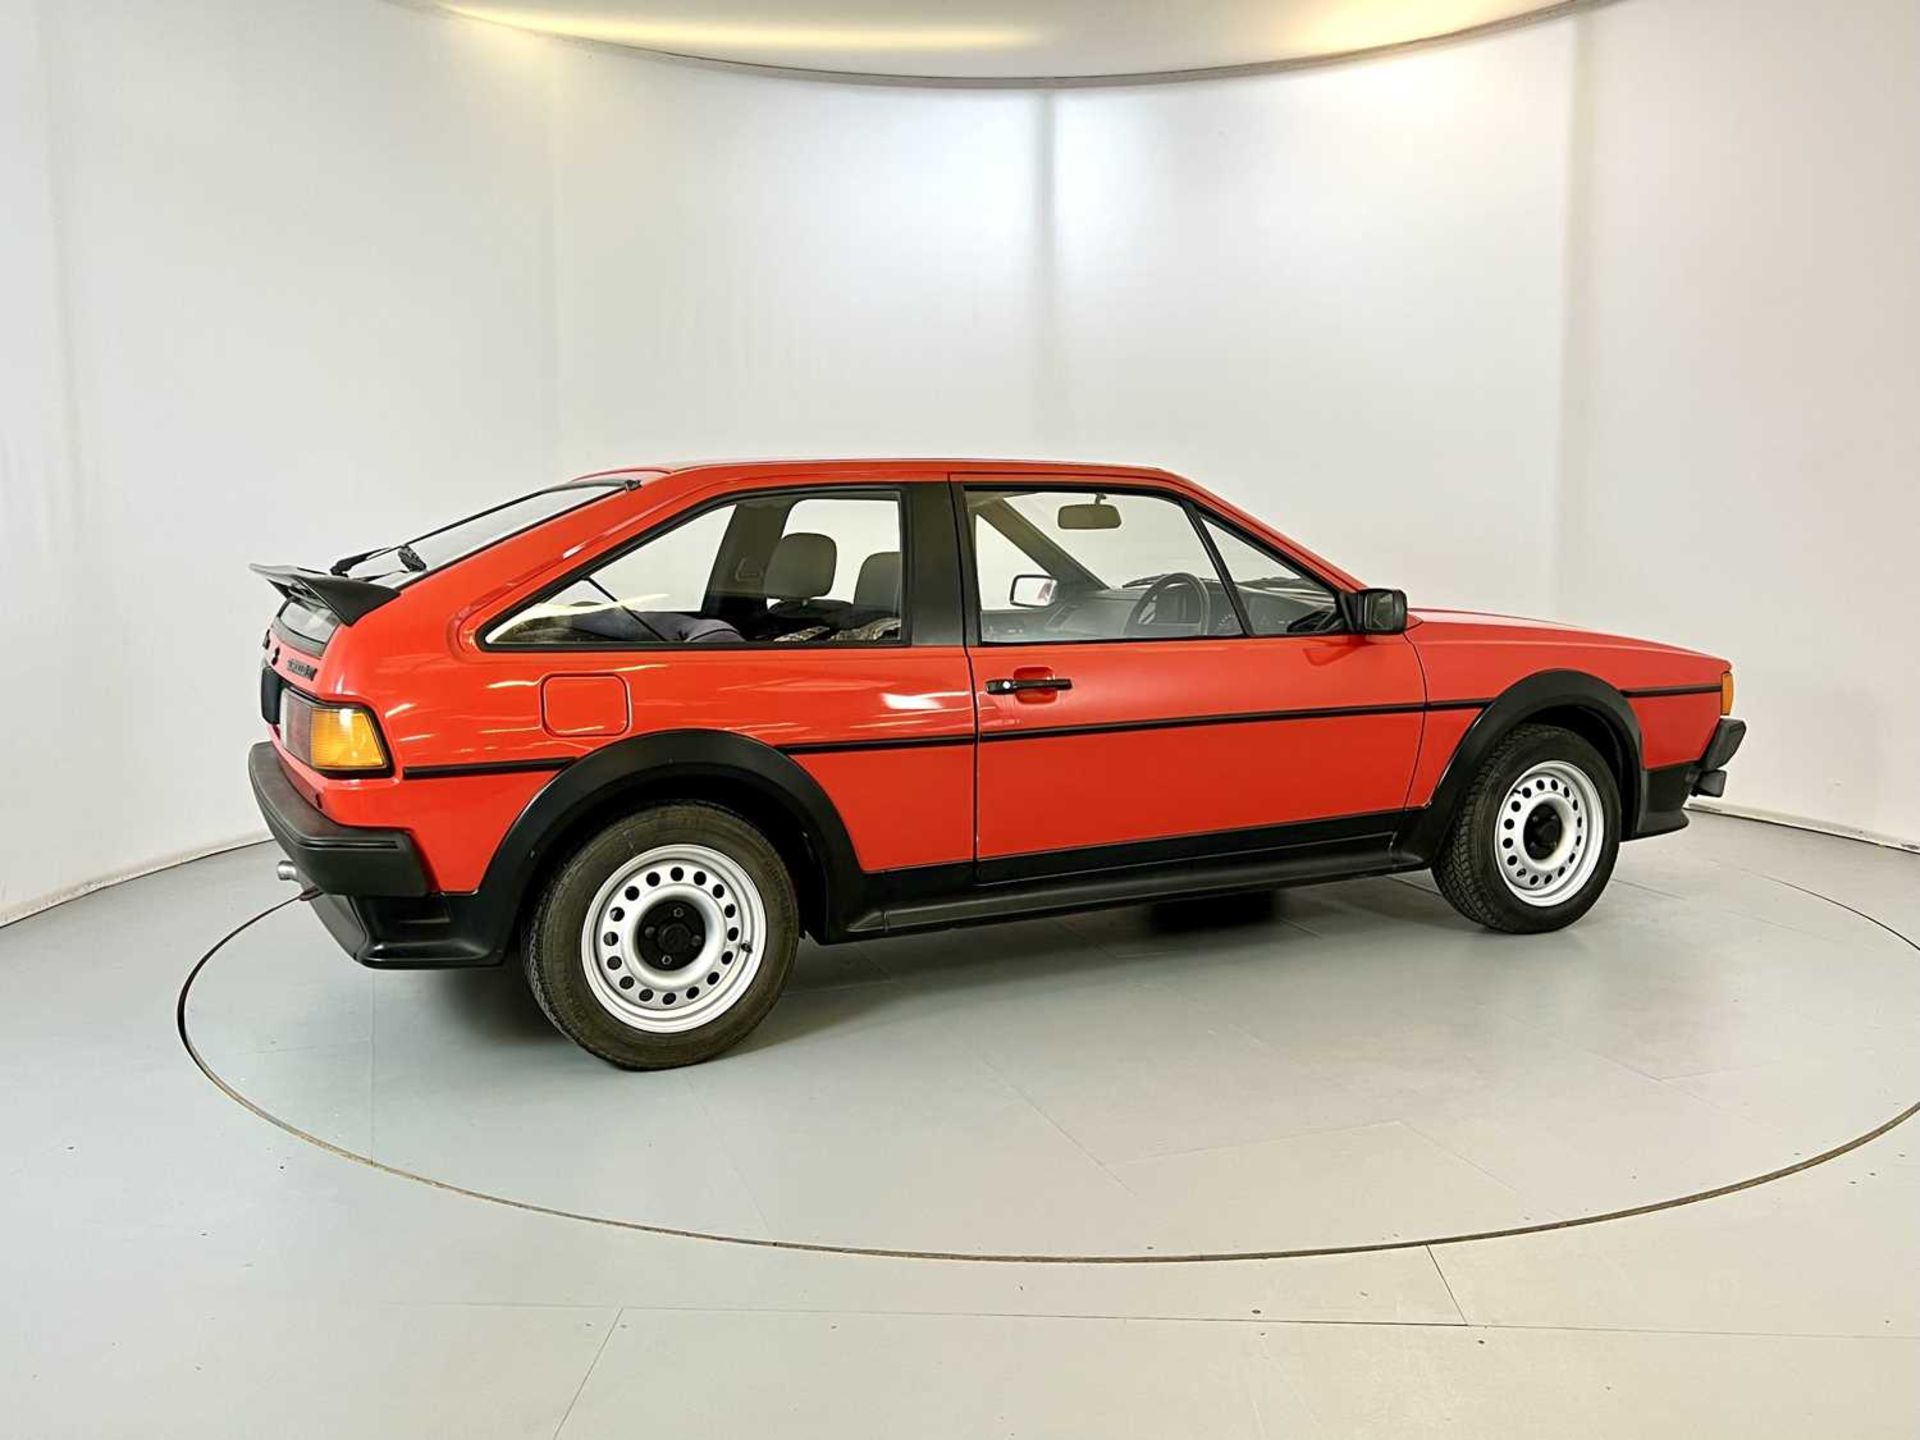 1985 Volkswagen Scirocco GTS - Image 10 of 30